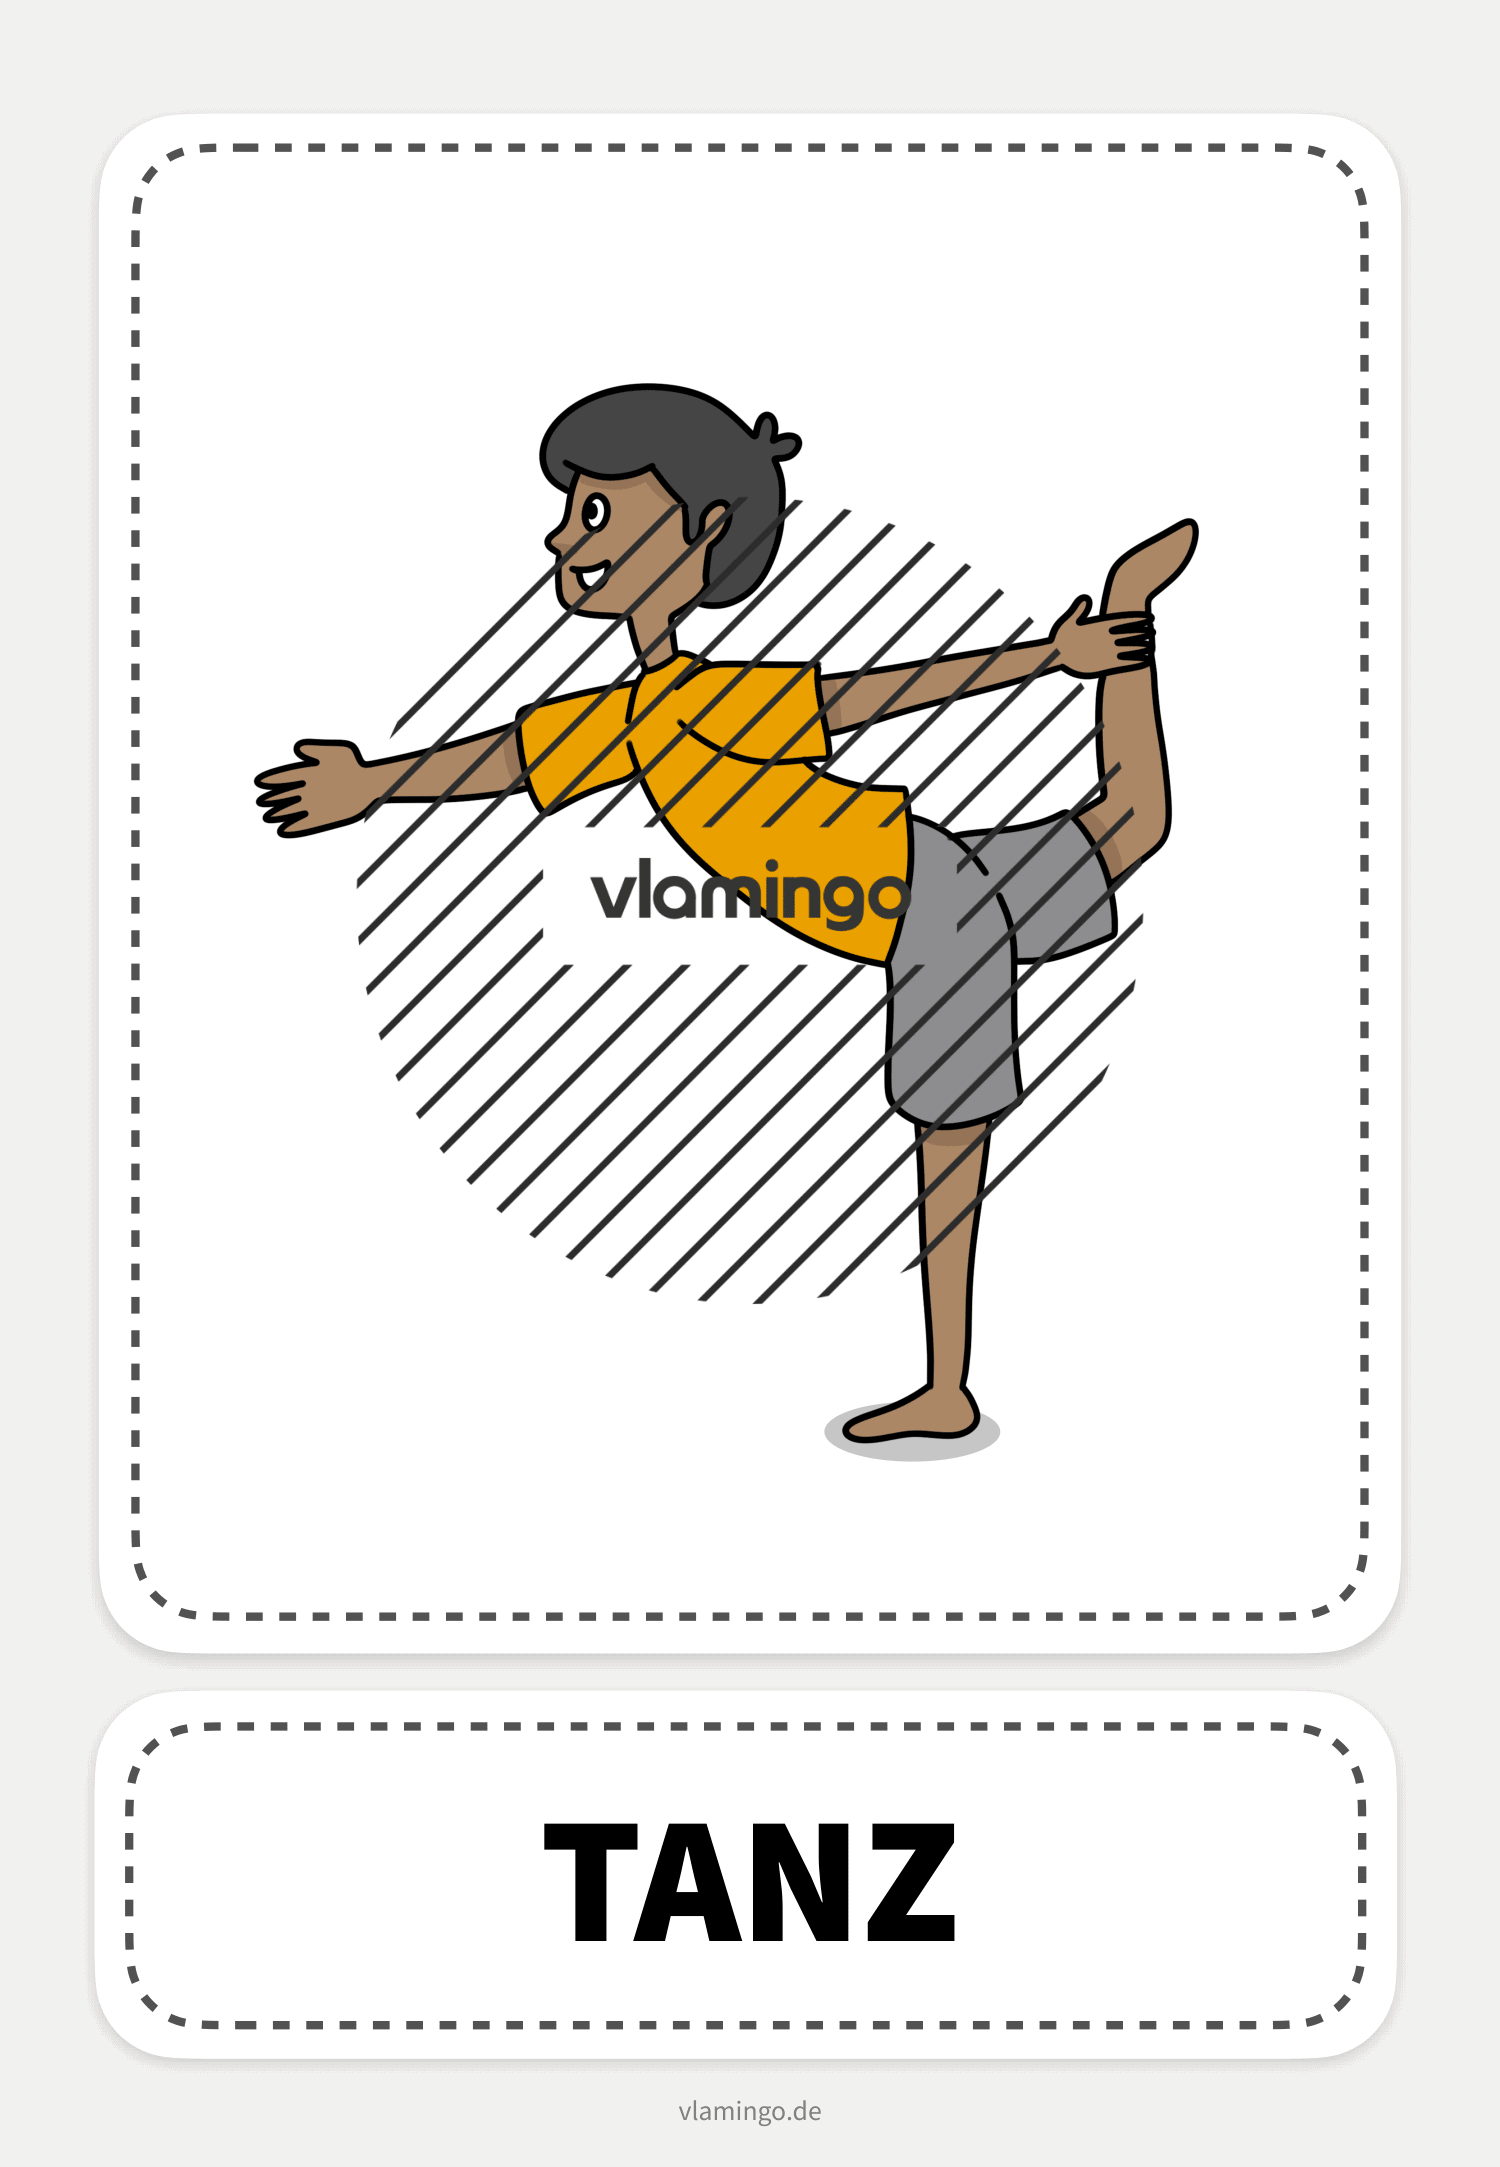 Tanz - Yoga-Übung (Kinderyoga)